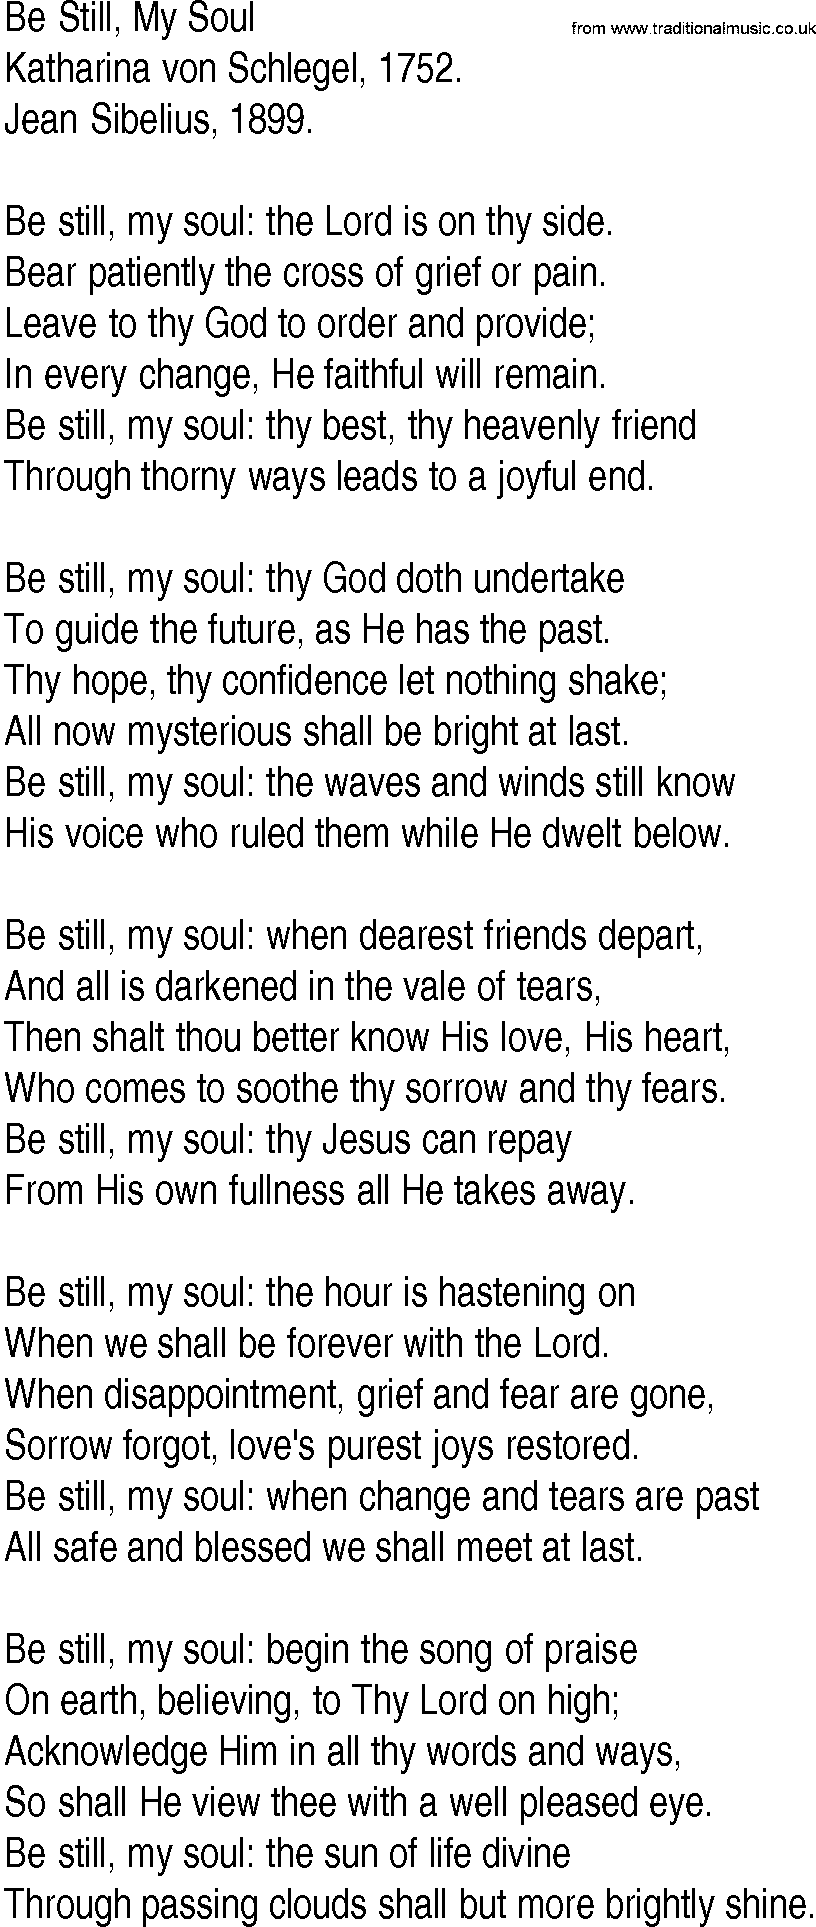 Hymn and Gospel Song: Be Still, My Soul by Katharina von Schlegel lyrics